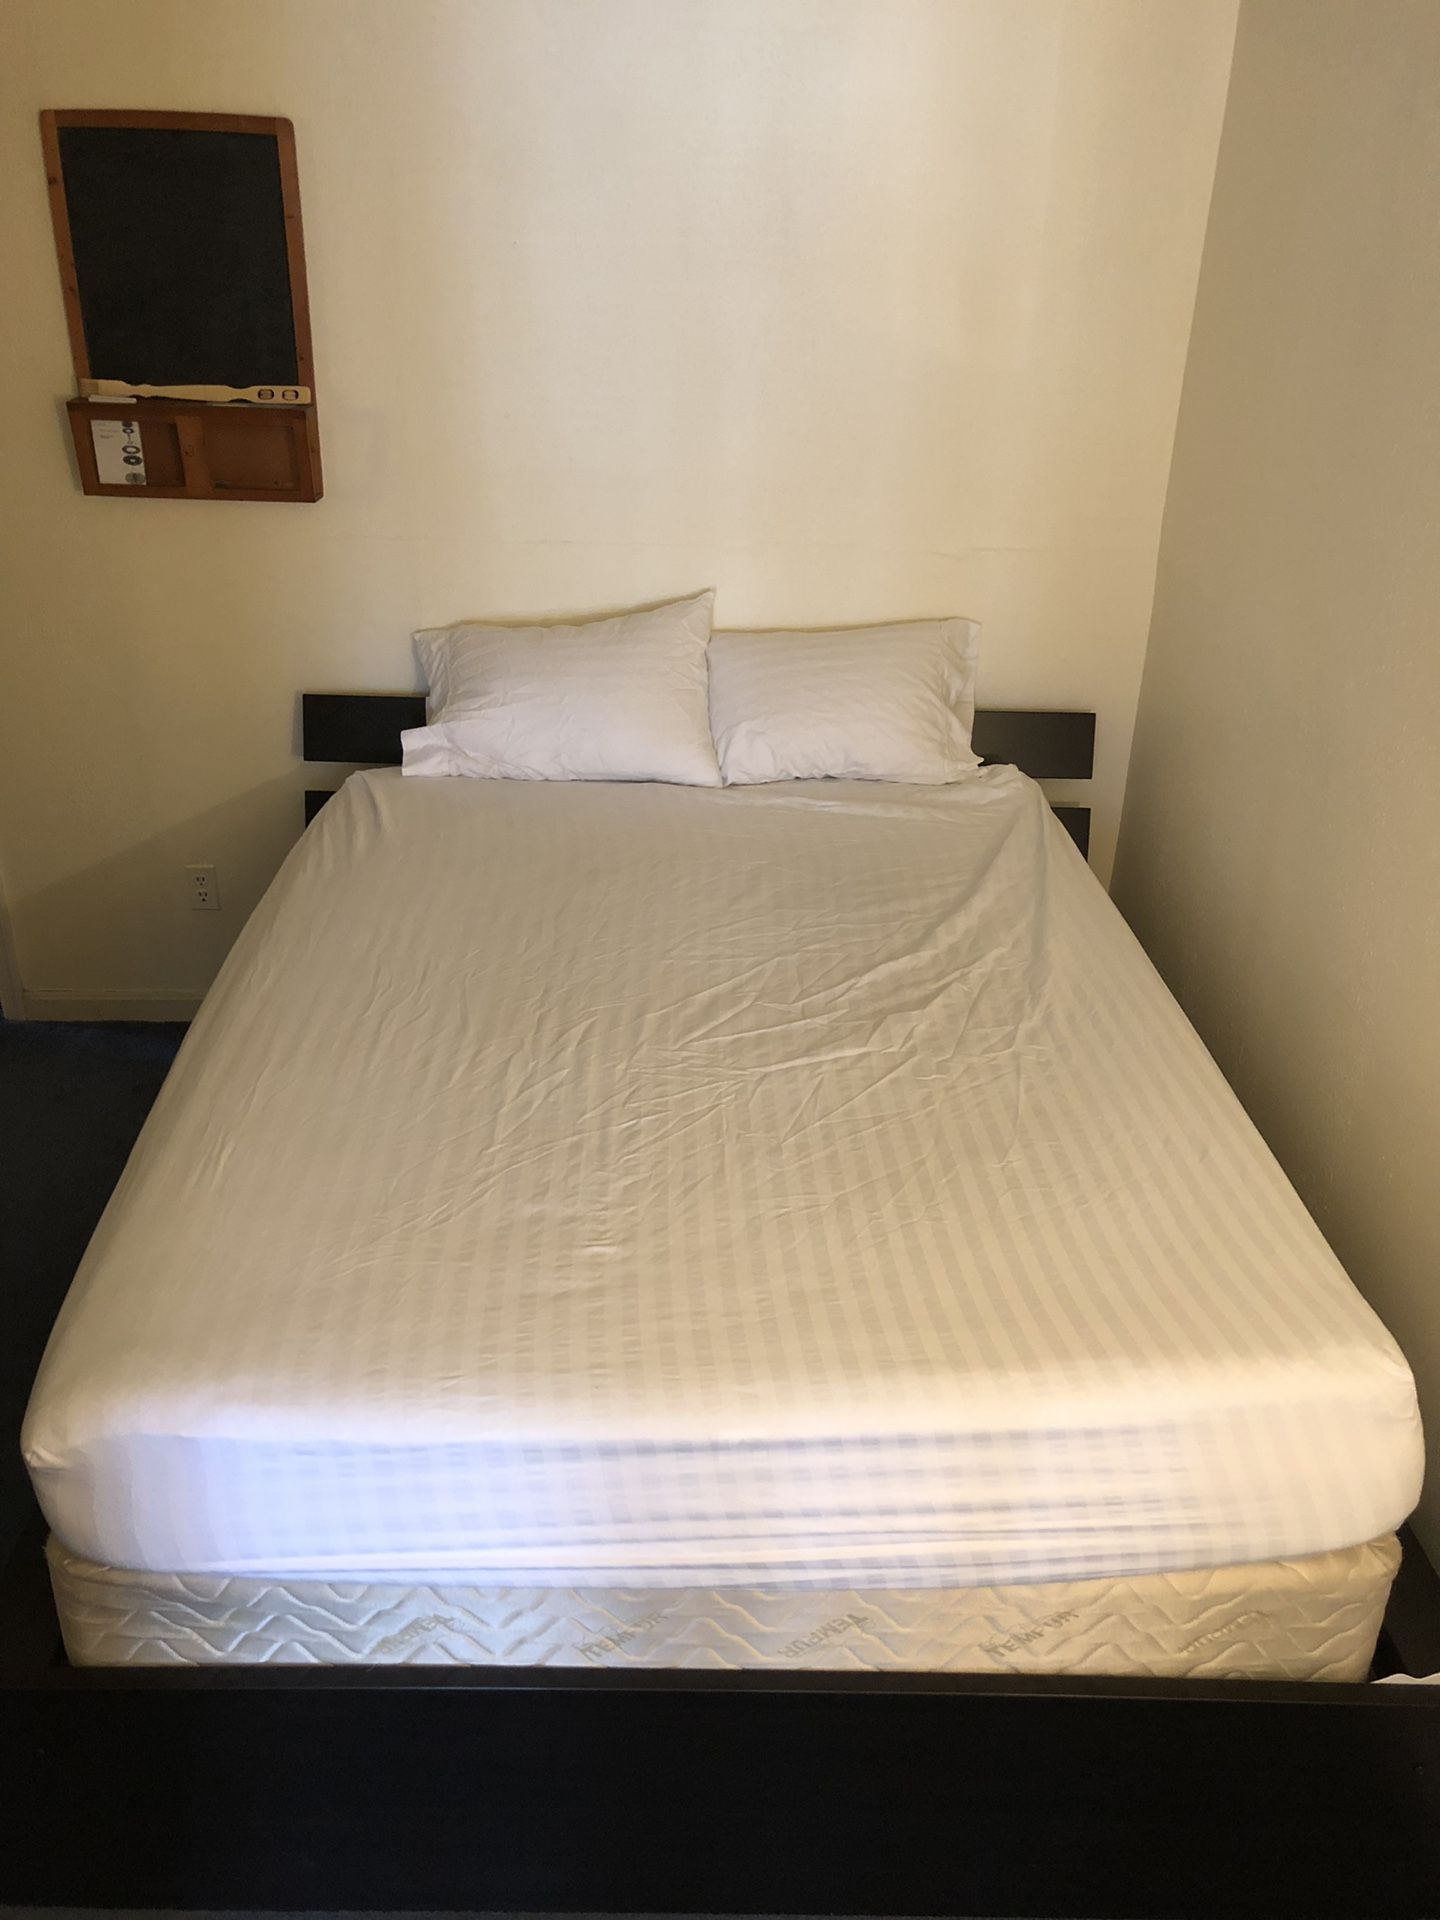 Queen Tempurpedic mattress, bed frame, down pillows